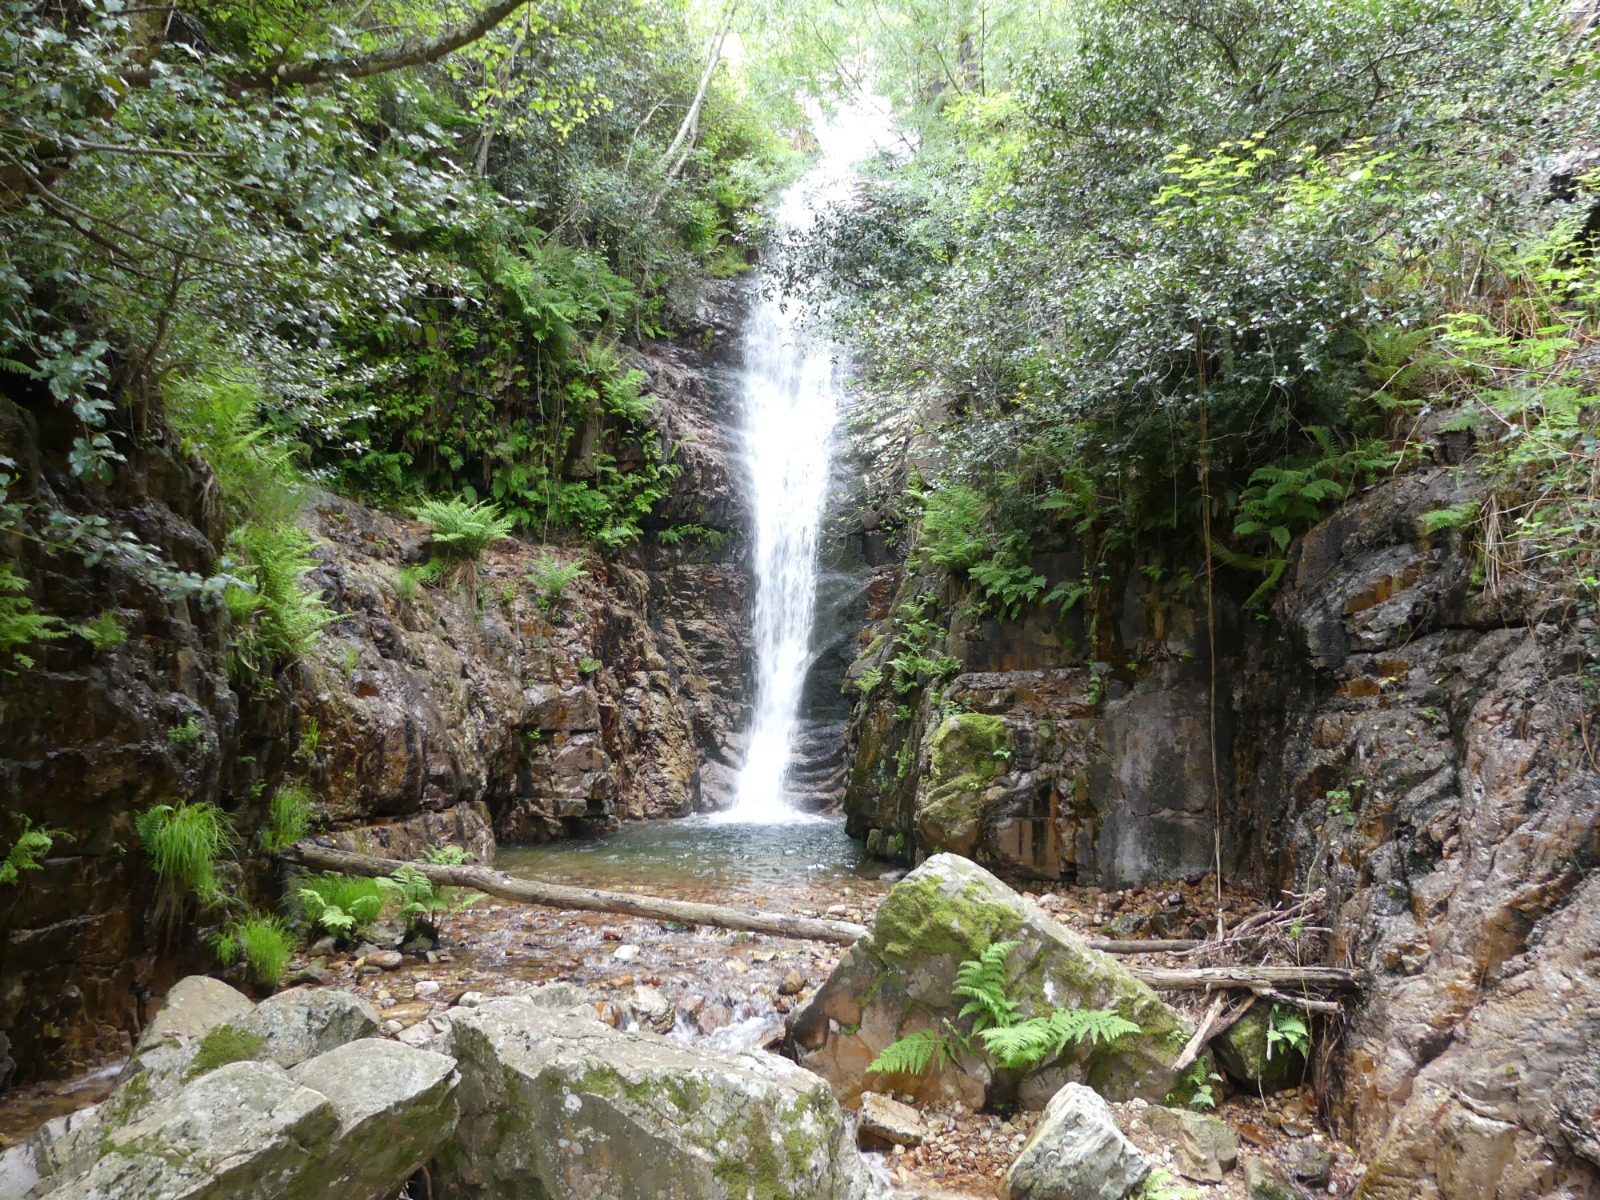 Cabañeros 1El Parque Nacional de Cabañeros asegurará la calidad de las visitas a la ruta de “El Chorro” de los Navalucillos, garantizando los objetivos de conservación